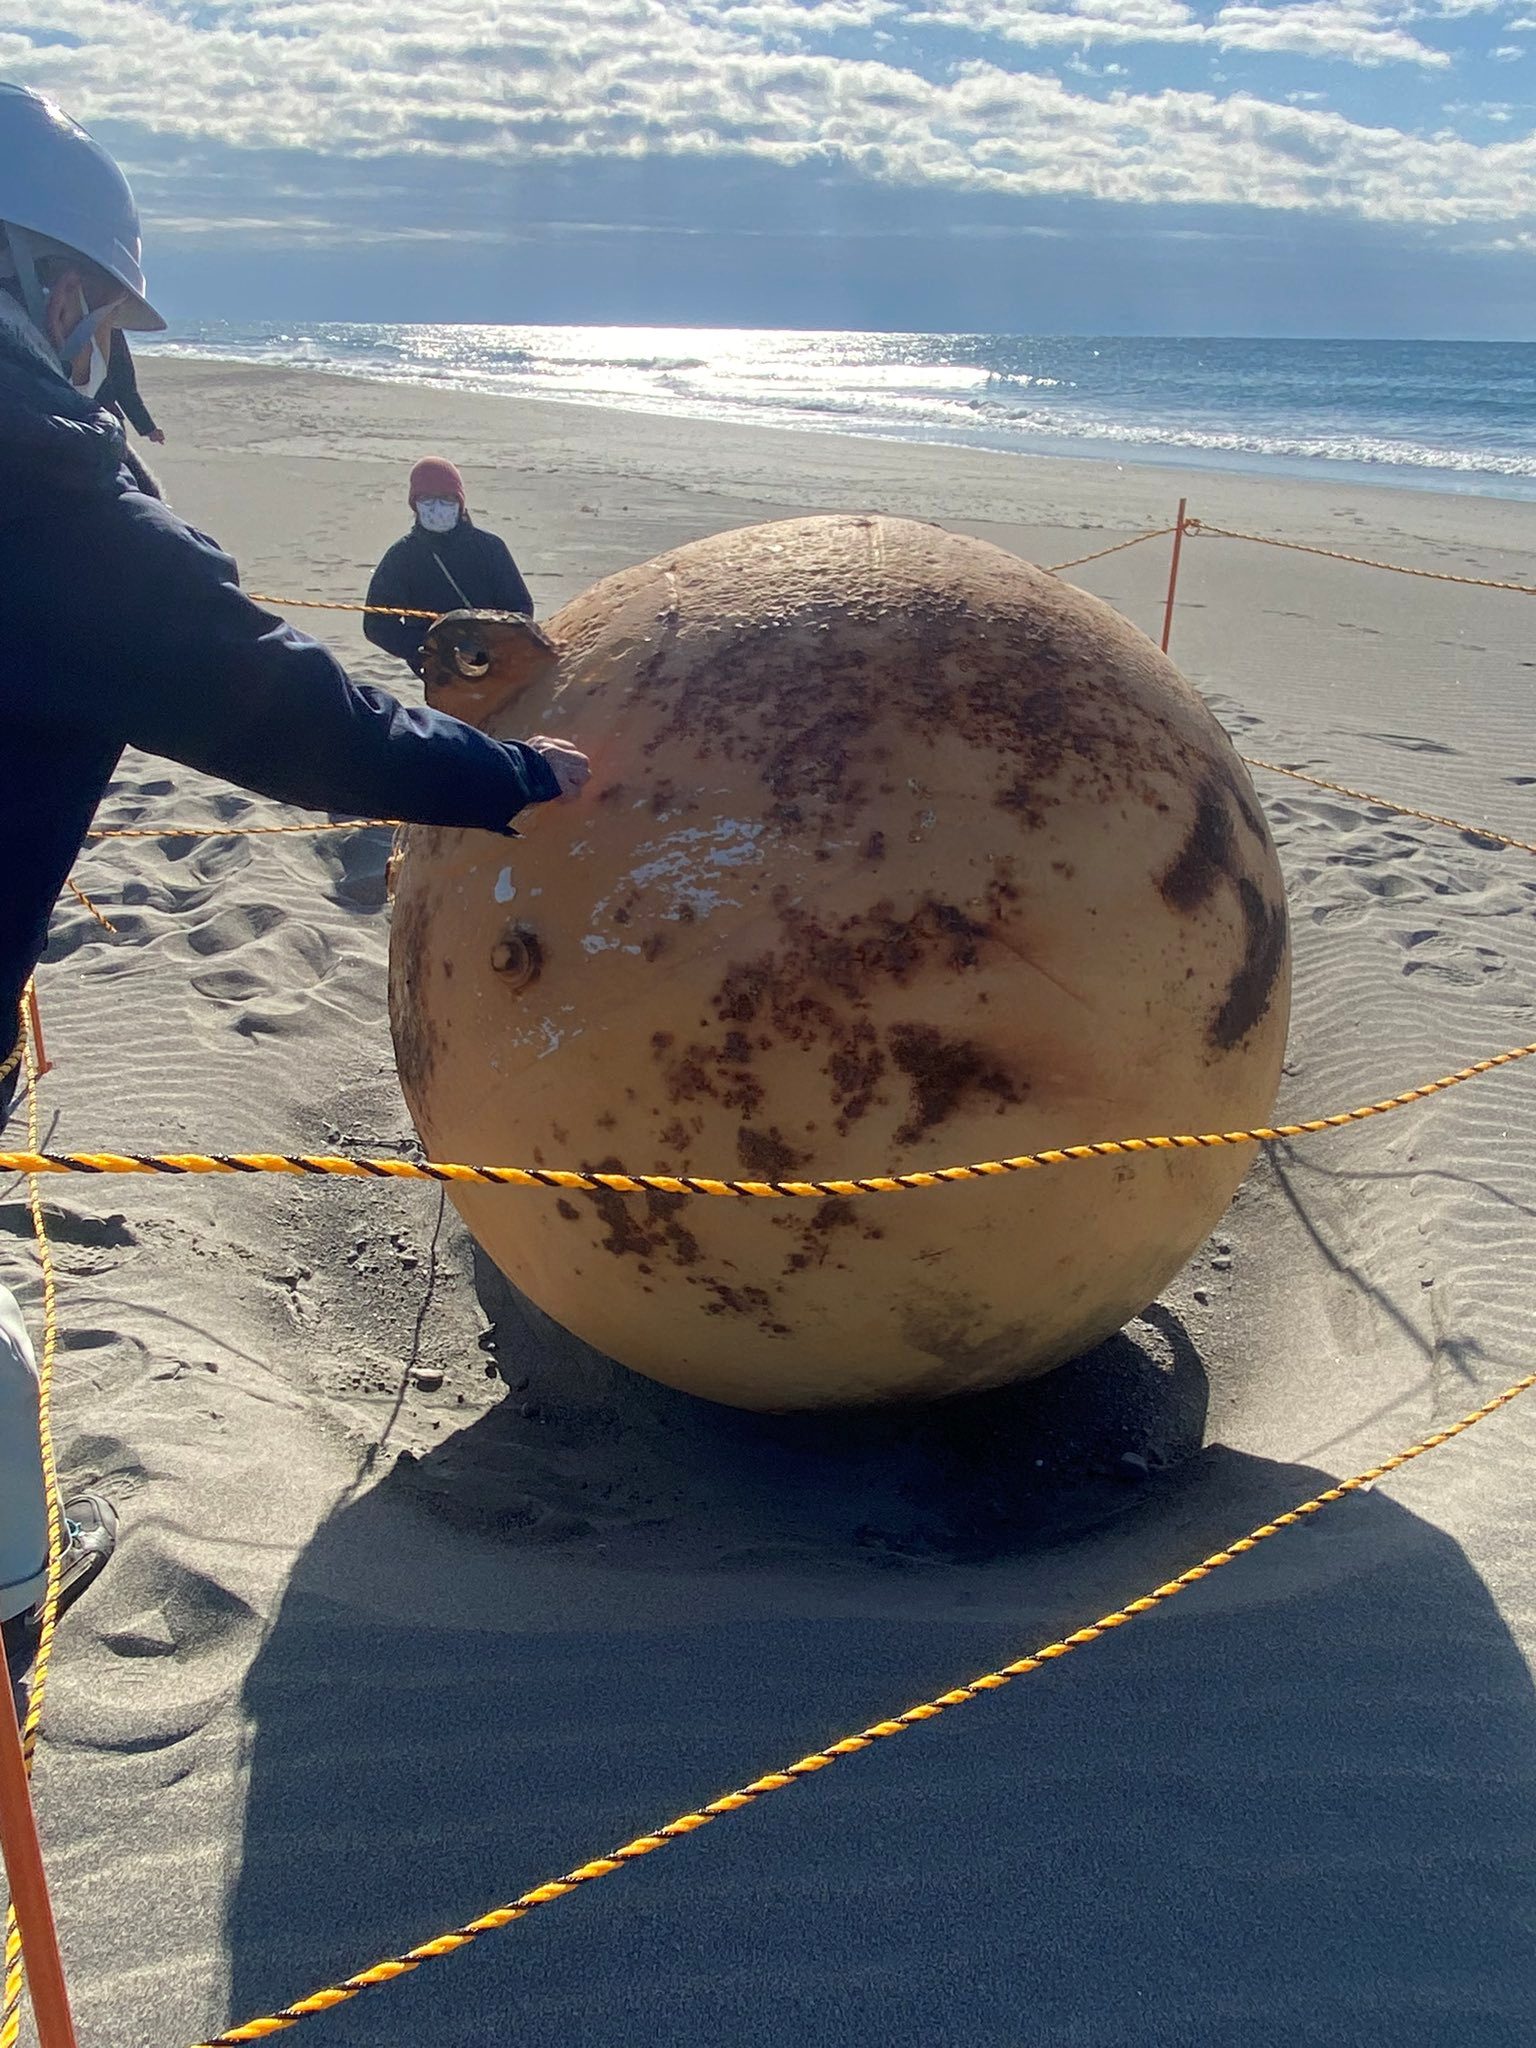 Especialistas cerraron el acceso a la playa para investigar el origen del objeto, que aún no fue confirmado (REUTERS)